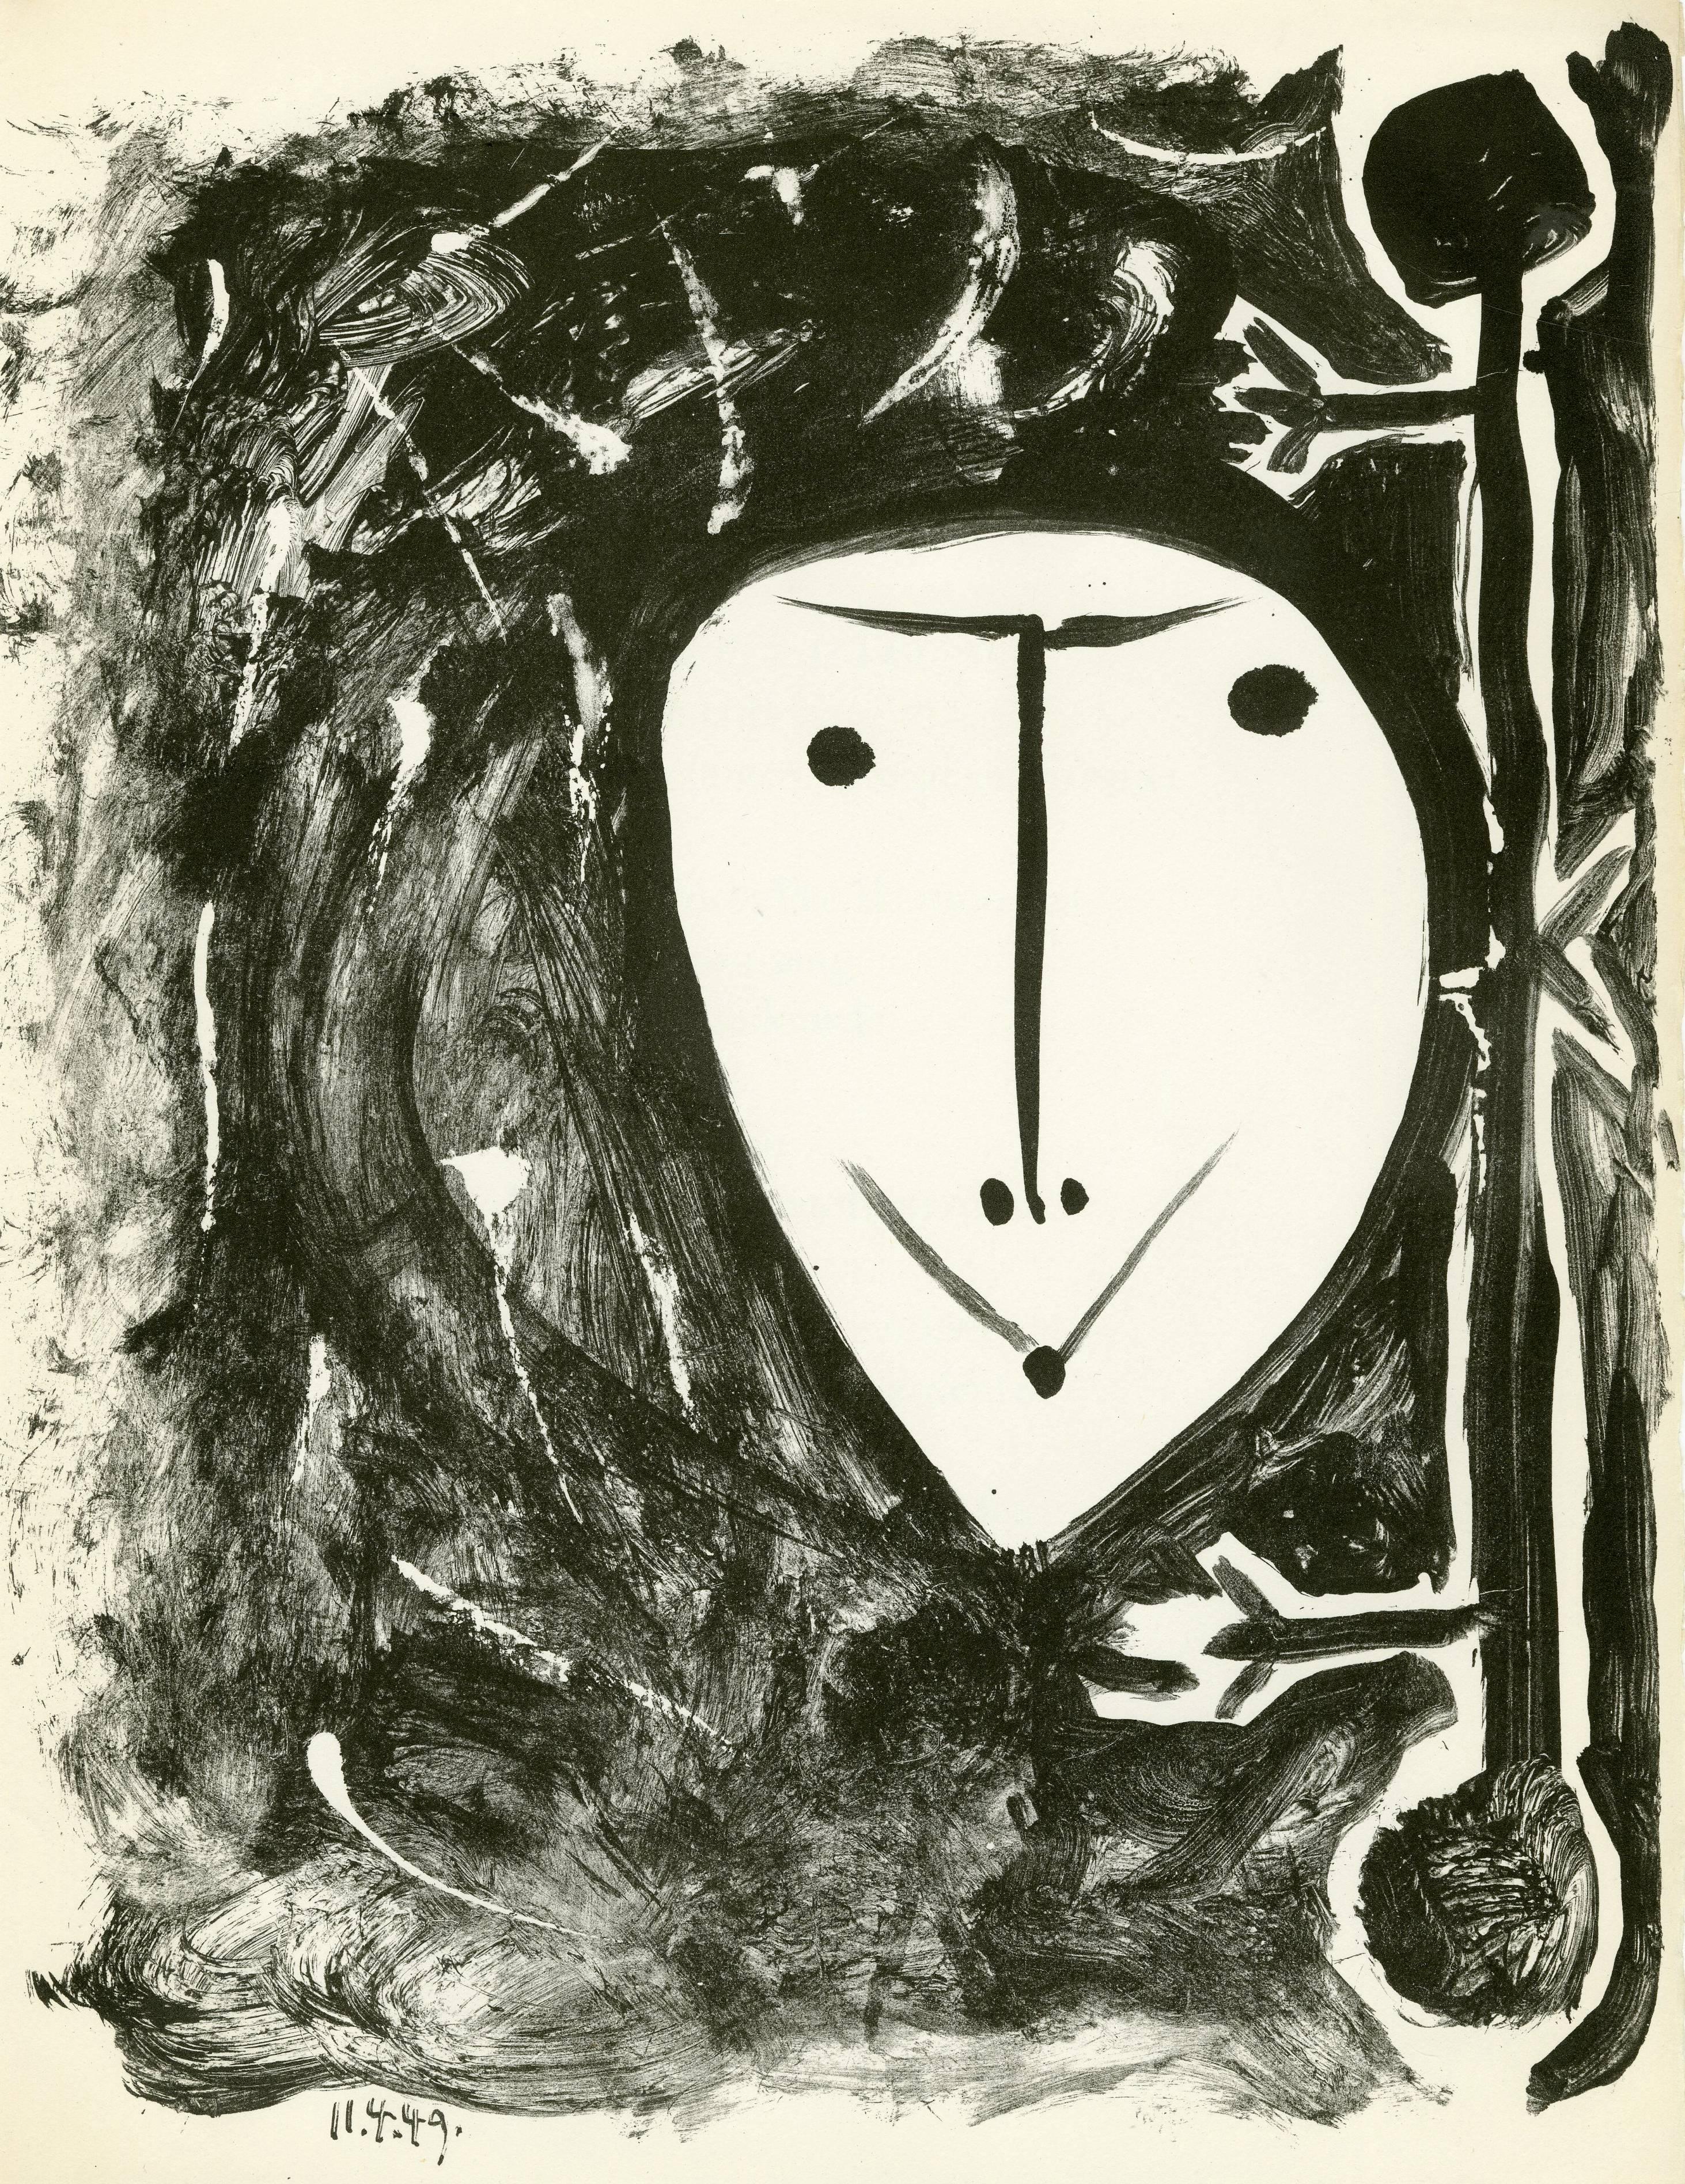 Pablo Picasso Portrait Print - Plate 4, Elegie de Ihpetonga suive de Masques de cendre 